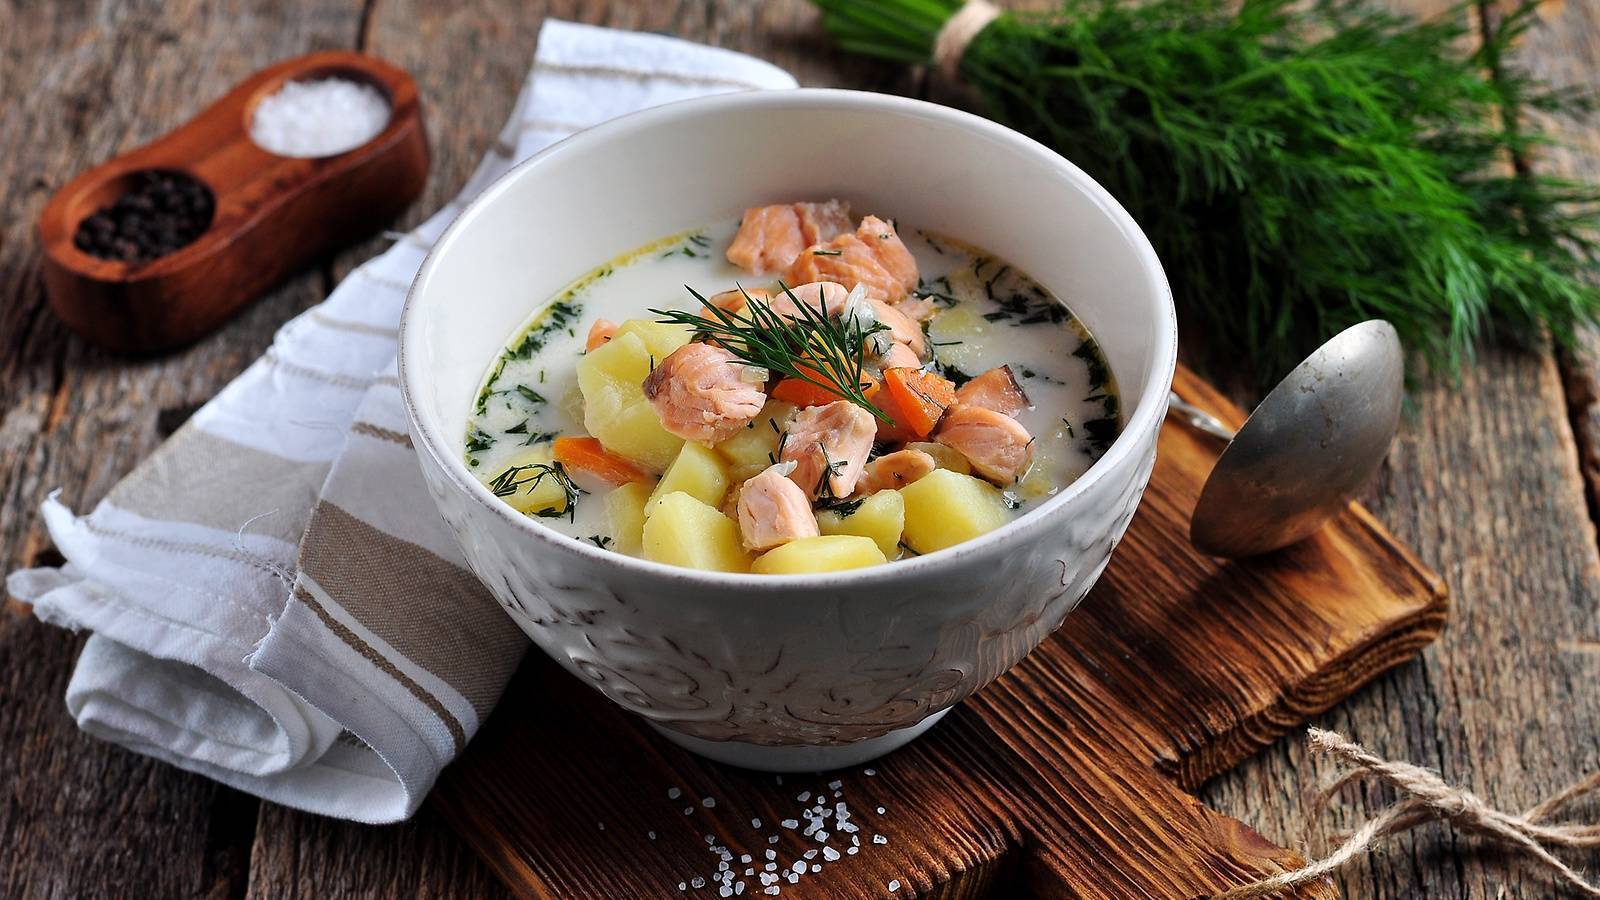 Суп (уха) из форели со сливками по-фински - правильный рецепт